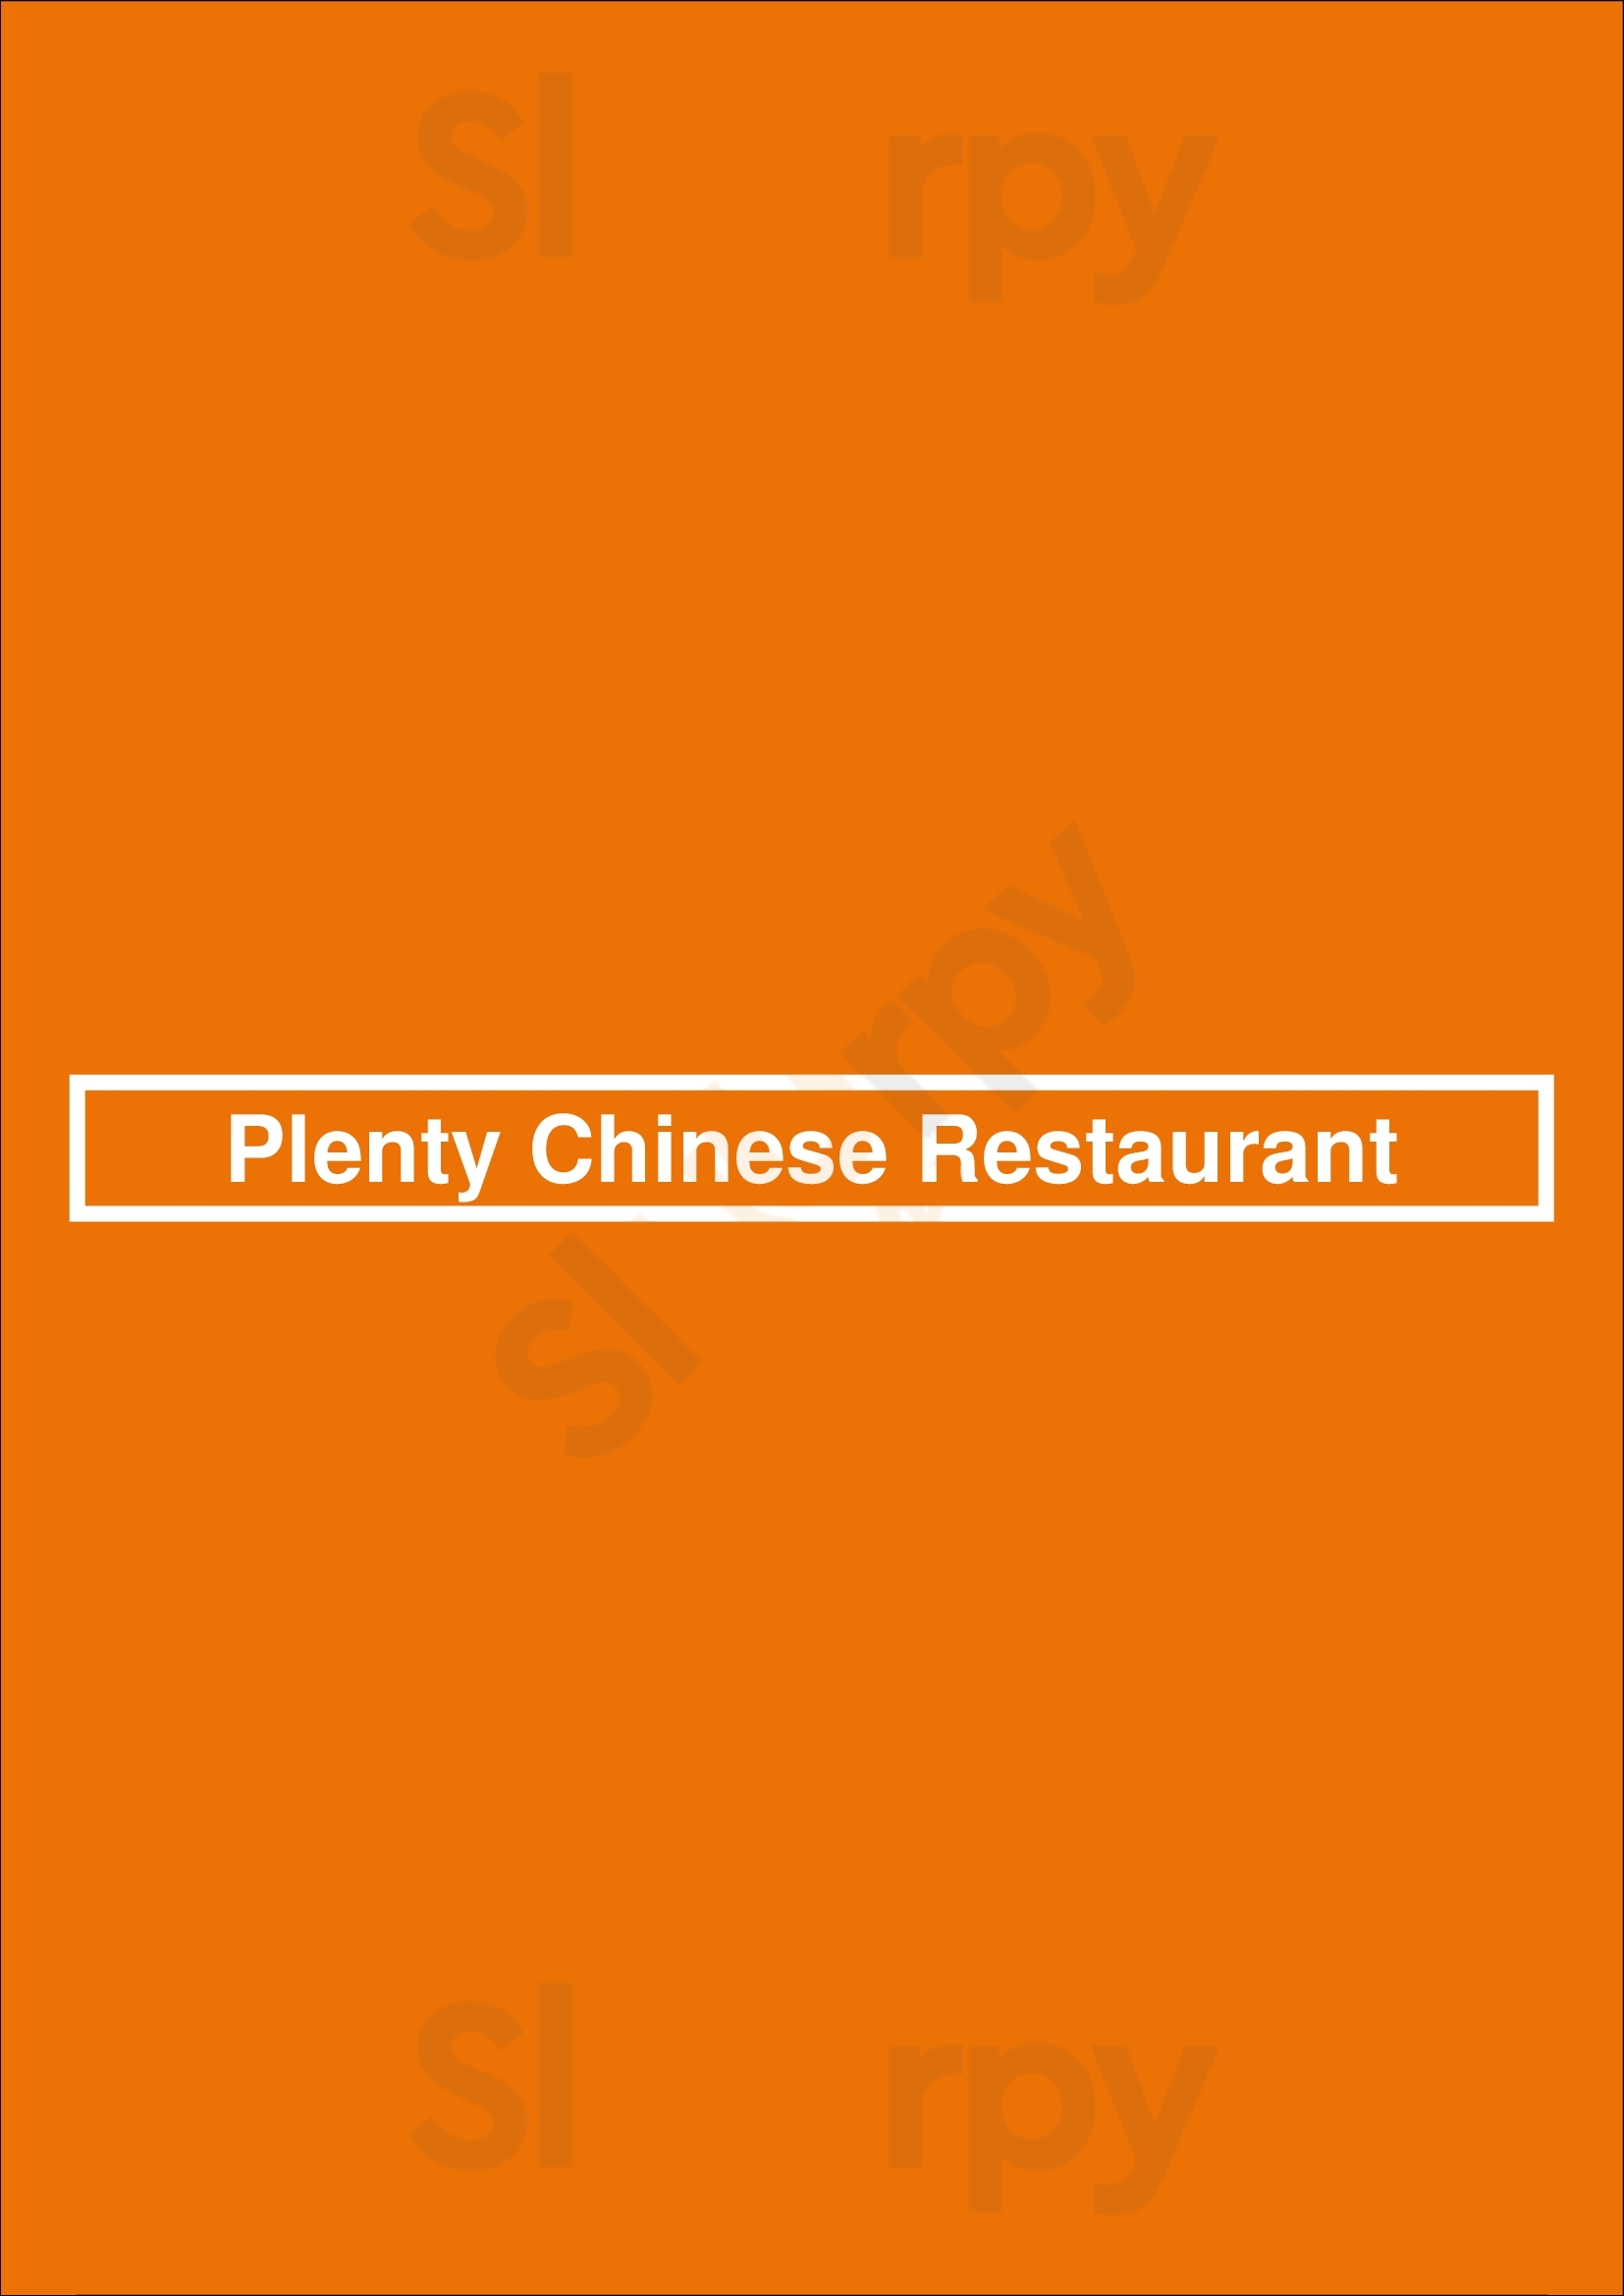 Plenty Chinese Restaurant Chicago Menu - 1